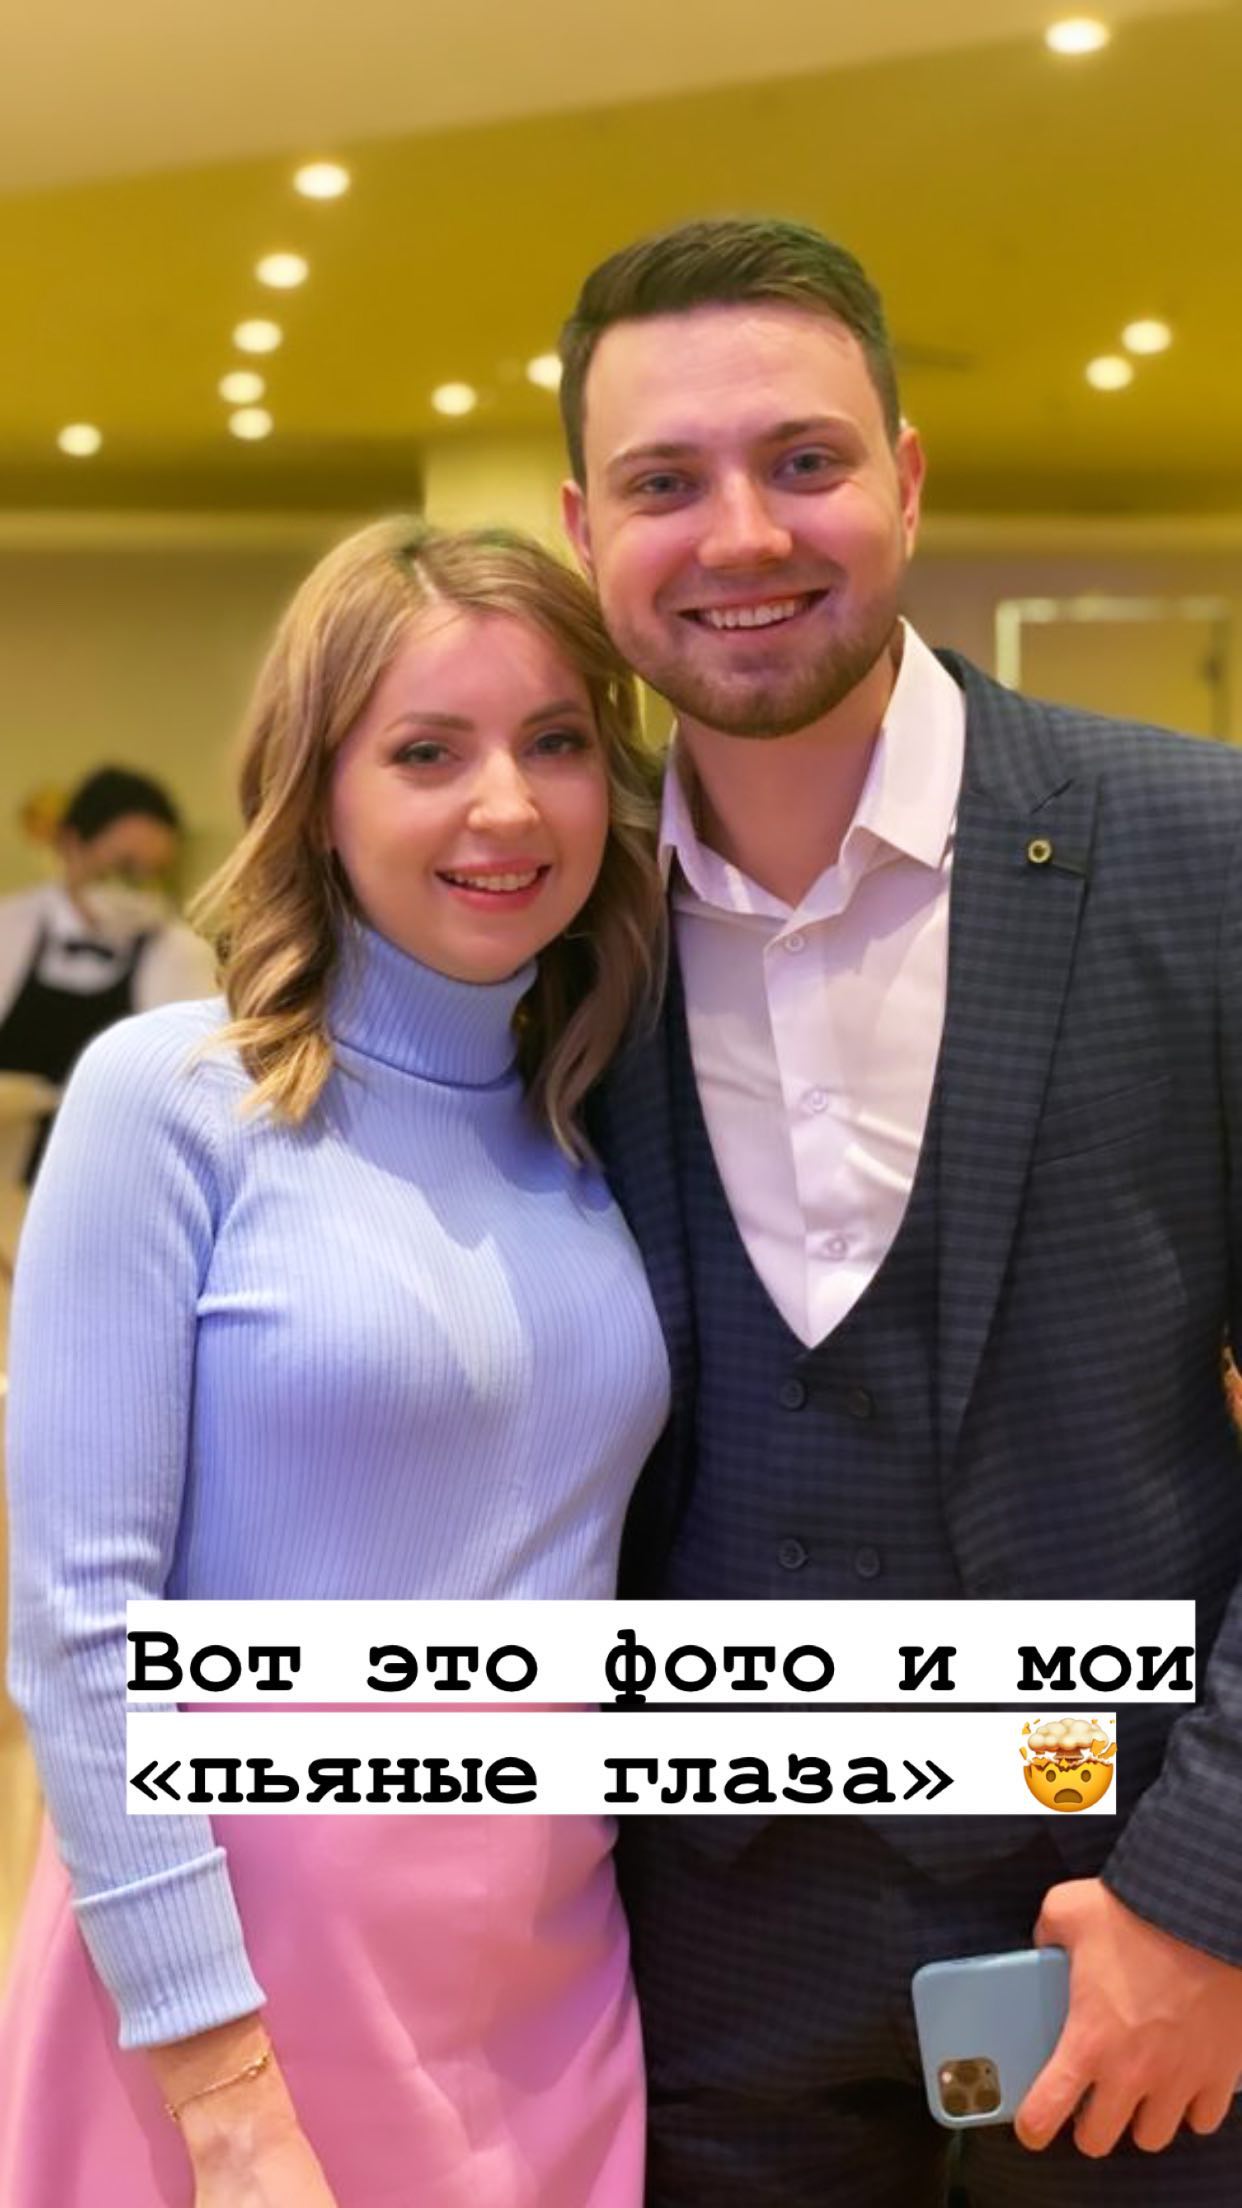 Екатерина Диденко рассталась с бойфрендом и отправила маму на пластику груди